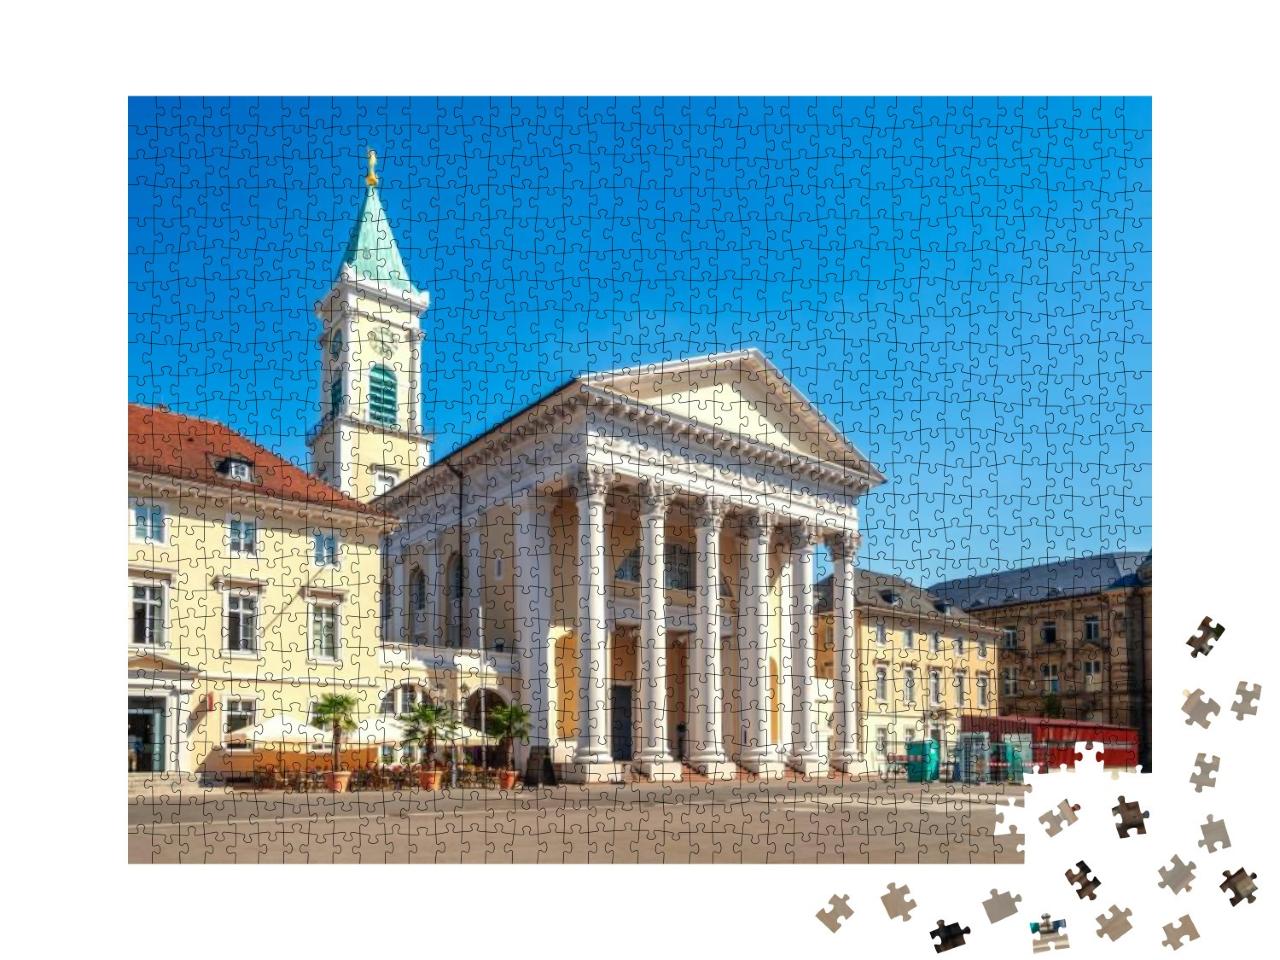 Puzzle 1000 Teile „Stadtkirche am Marktplatz in Karlsruhe, Deutschland“